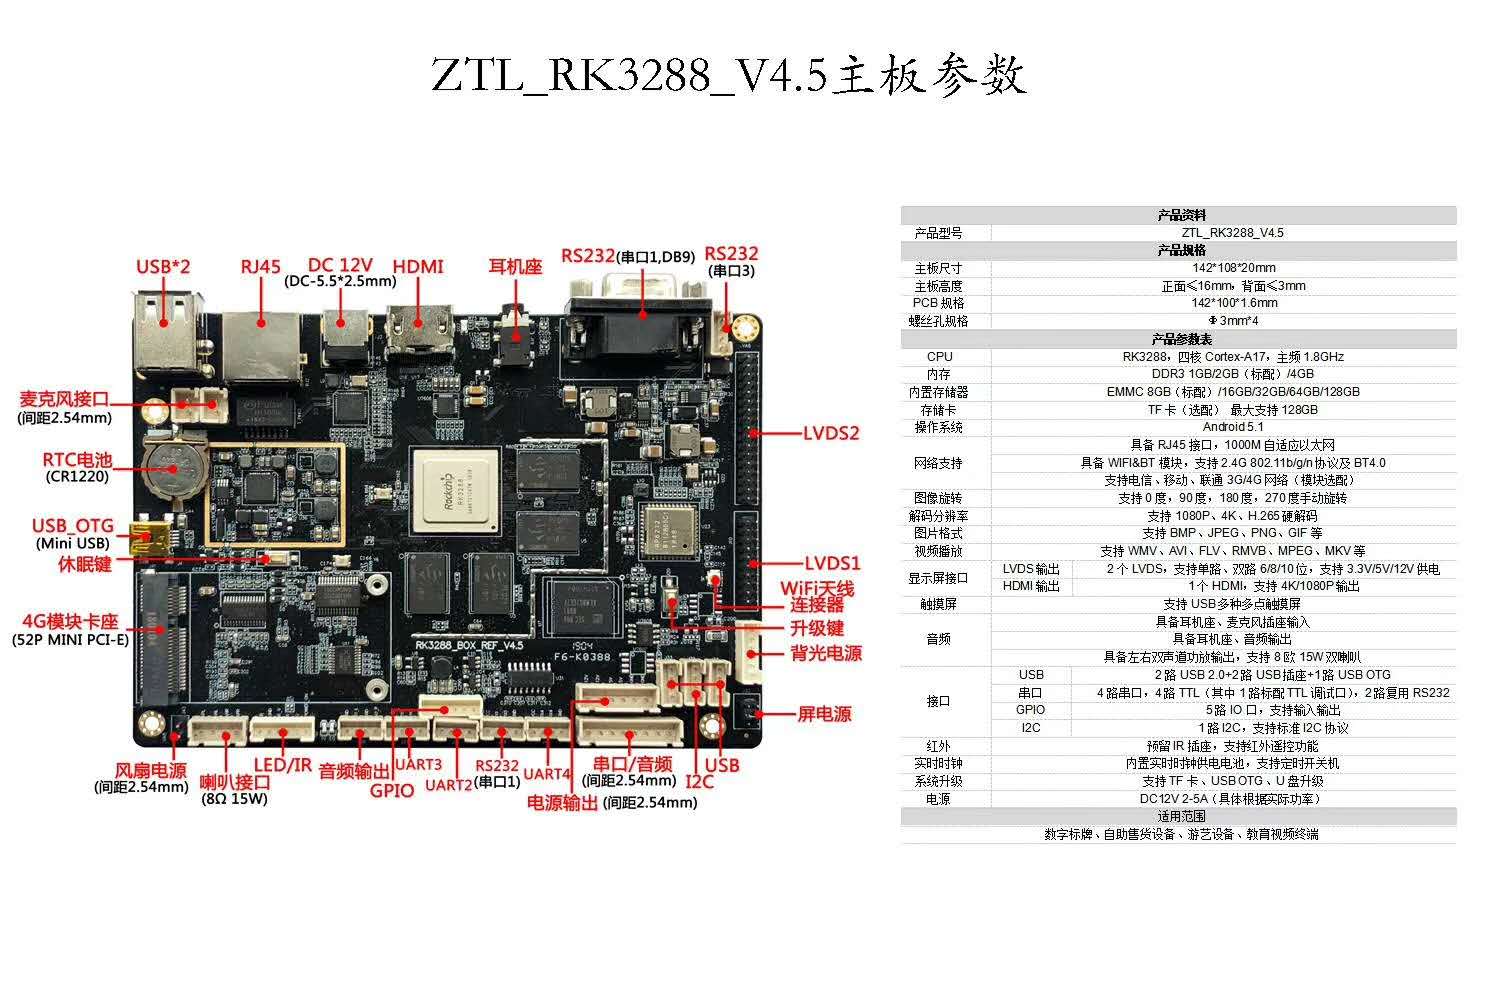 RK3288教育视频终端安卓主板/四核cortex-A17/主频1.8GHz